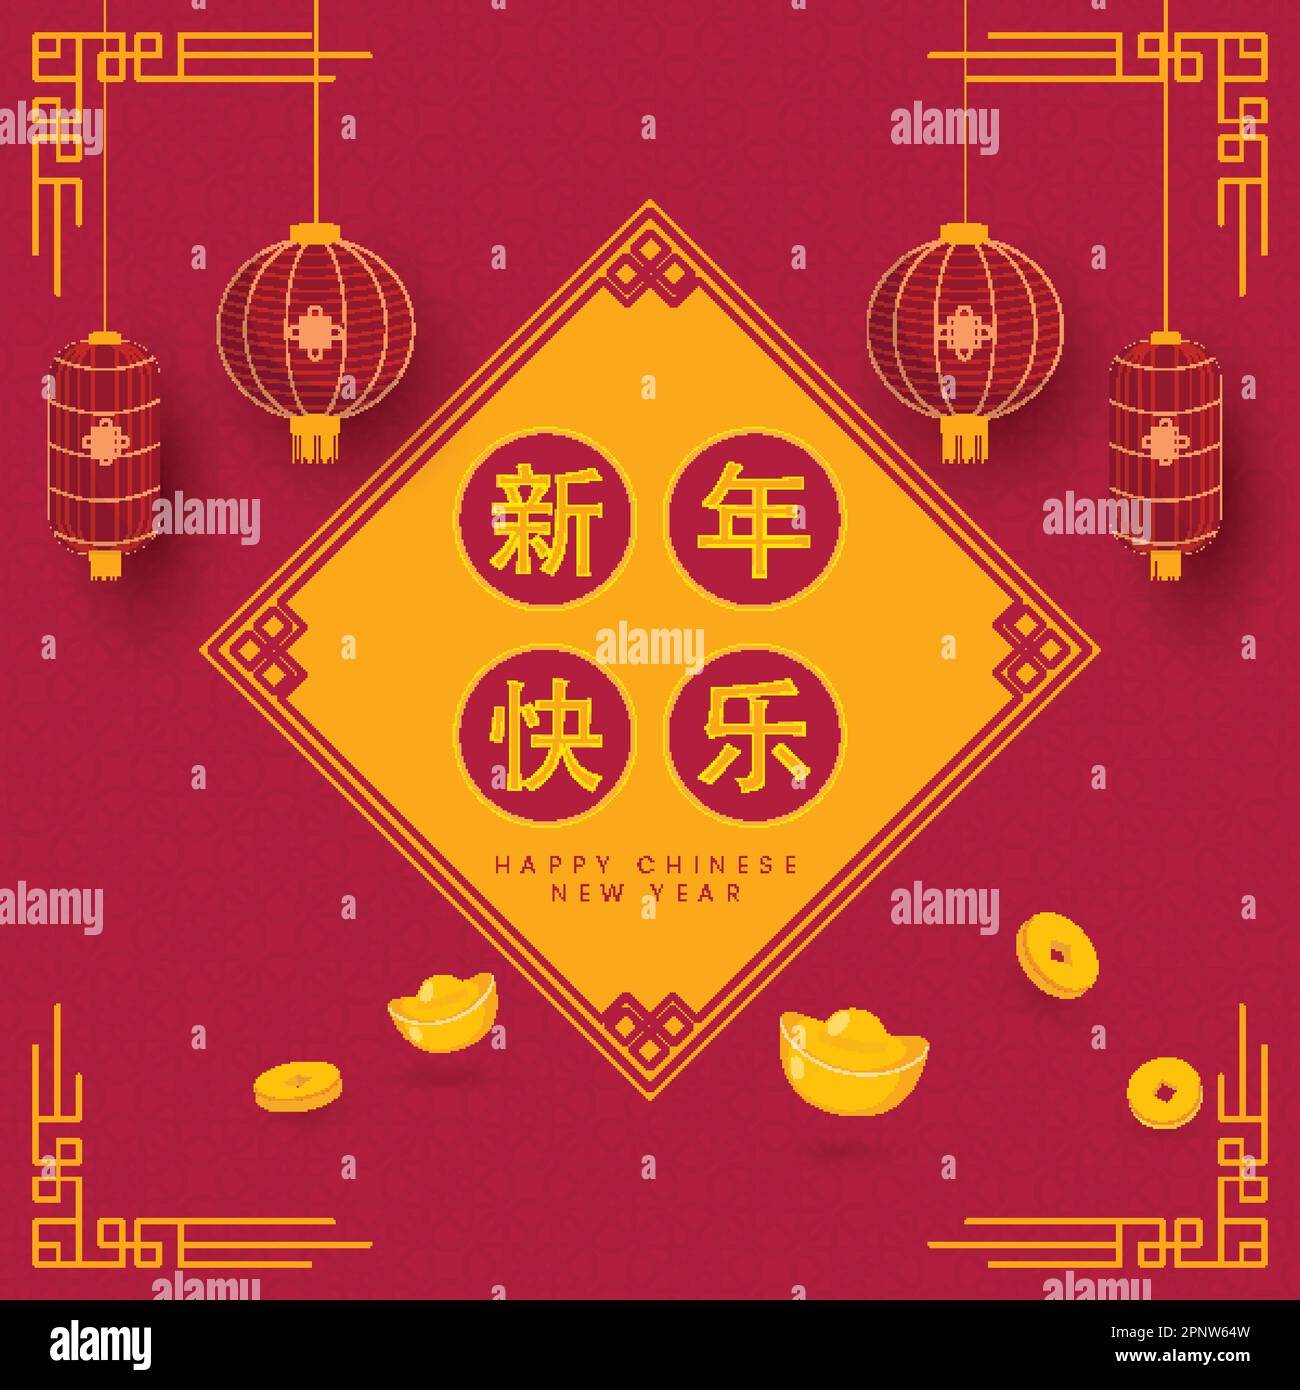 Mandarin testo di felice anno nuovo cinese su cornice Rhombus con monete Qing, lingotti, Lanterns Hang su sfondo orientale asiatico rosa scuro. Illustrazione Vettoriale